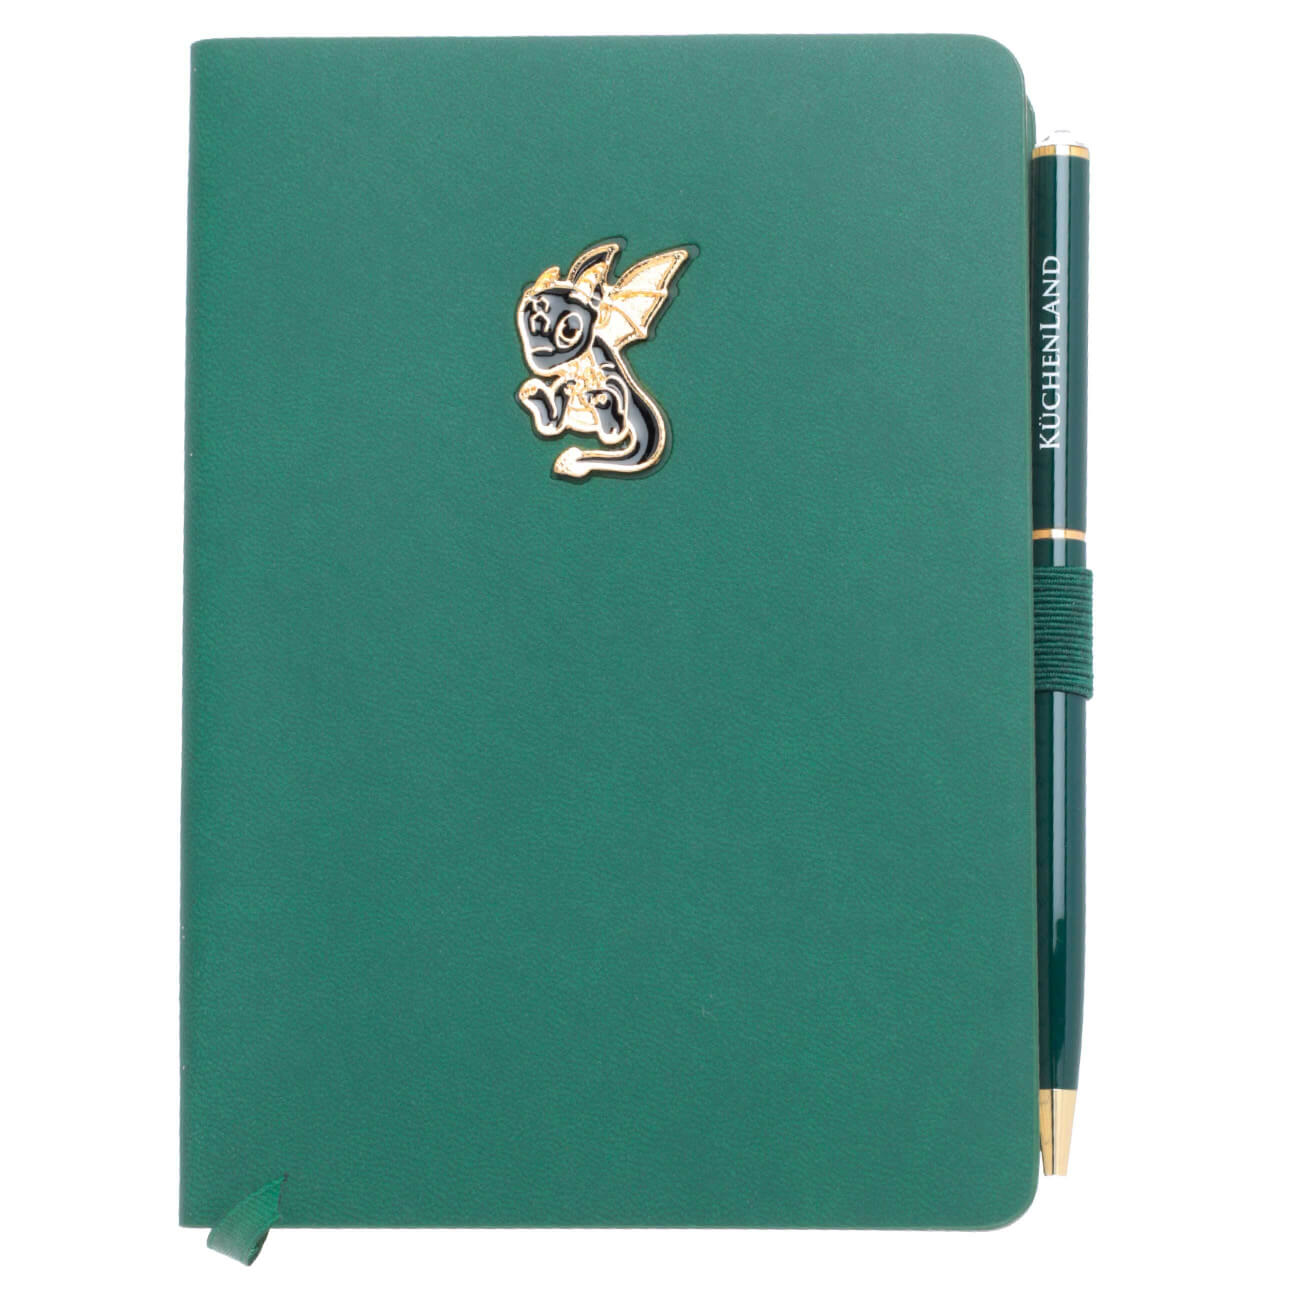 Блокнот для записей, 15х11 см, с ручкой, полиуретан, зеленый, Дракон с крыльями, Dragon spyro блокнот для записей paper art